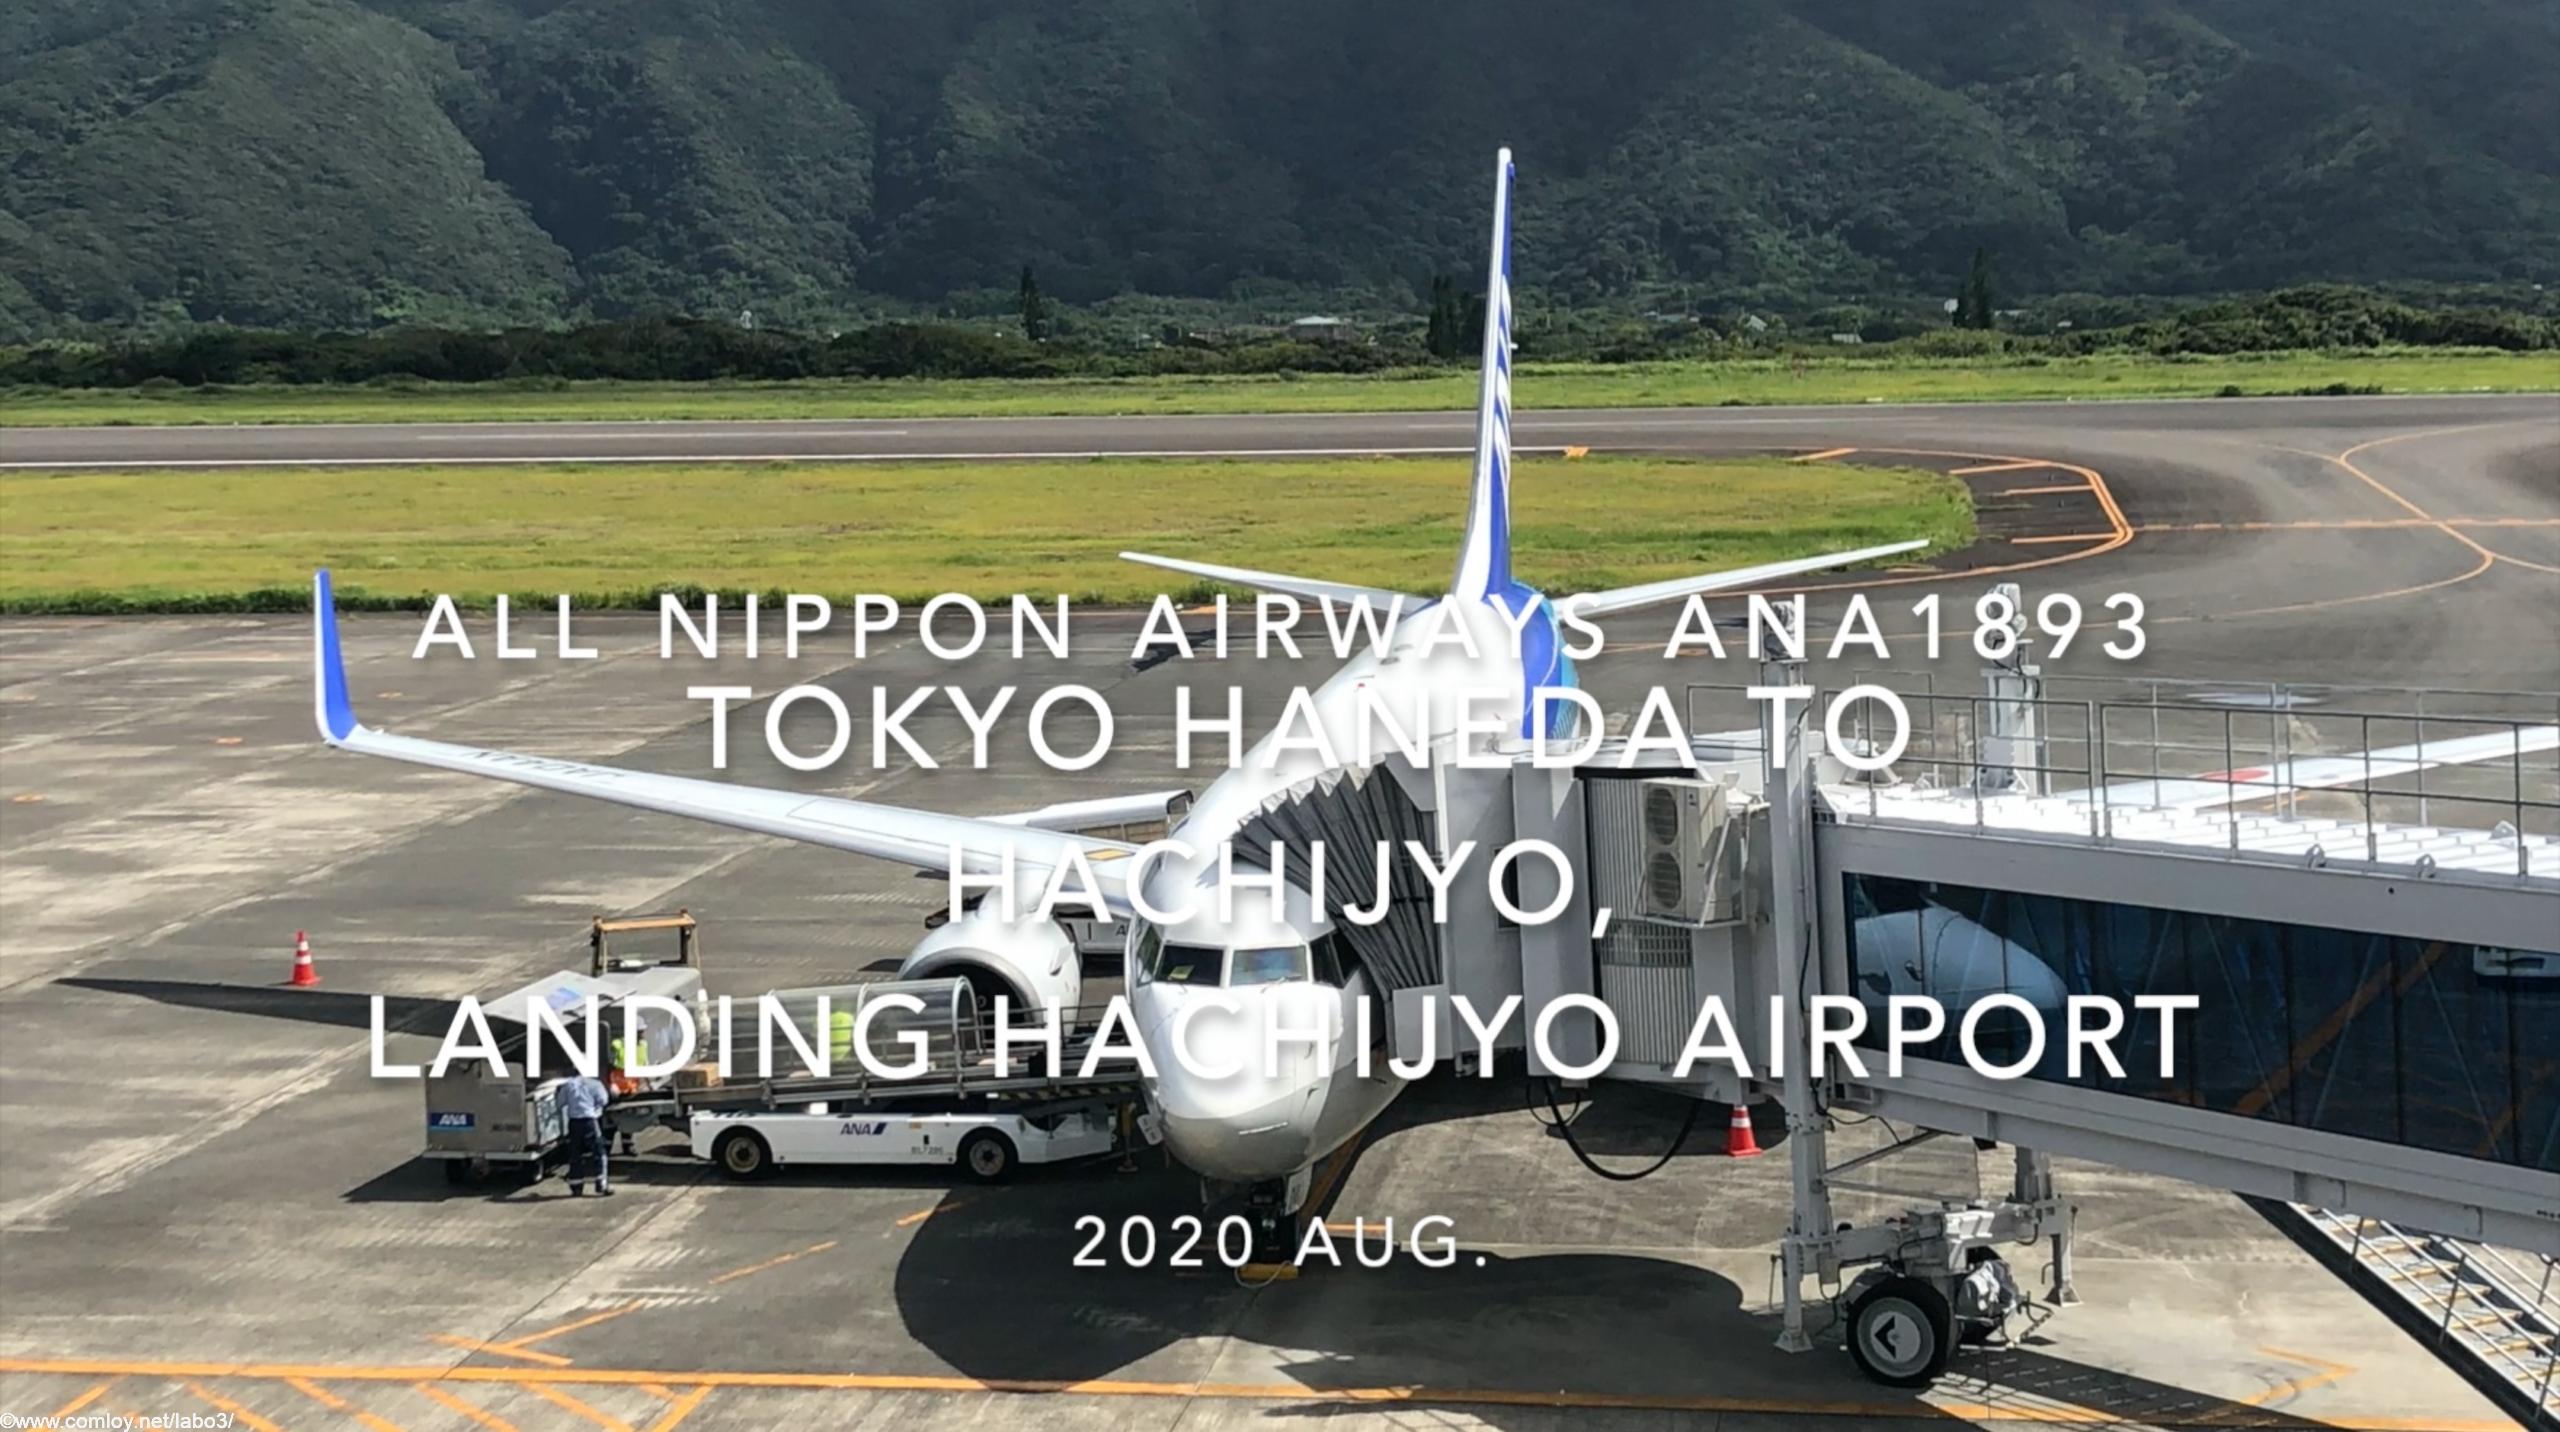 【機内から離着陸映像】2020 Sep ANA ANA1893 TOKYO HANEDA to HACHIJYO, Landing HACHIJYO Airport